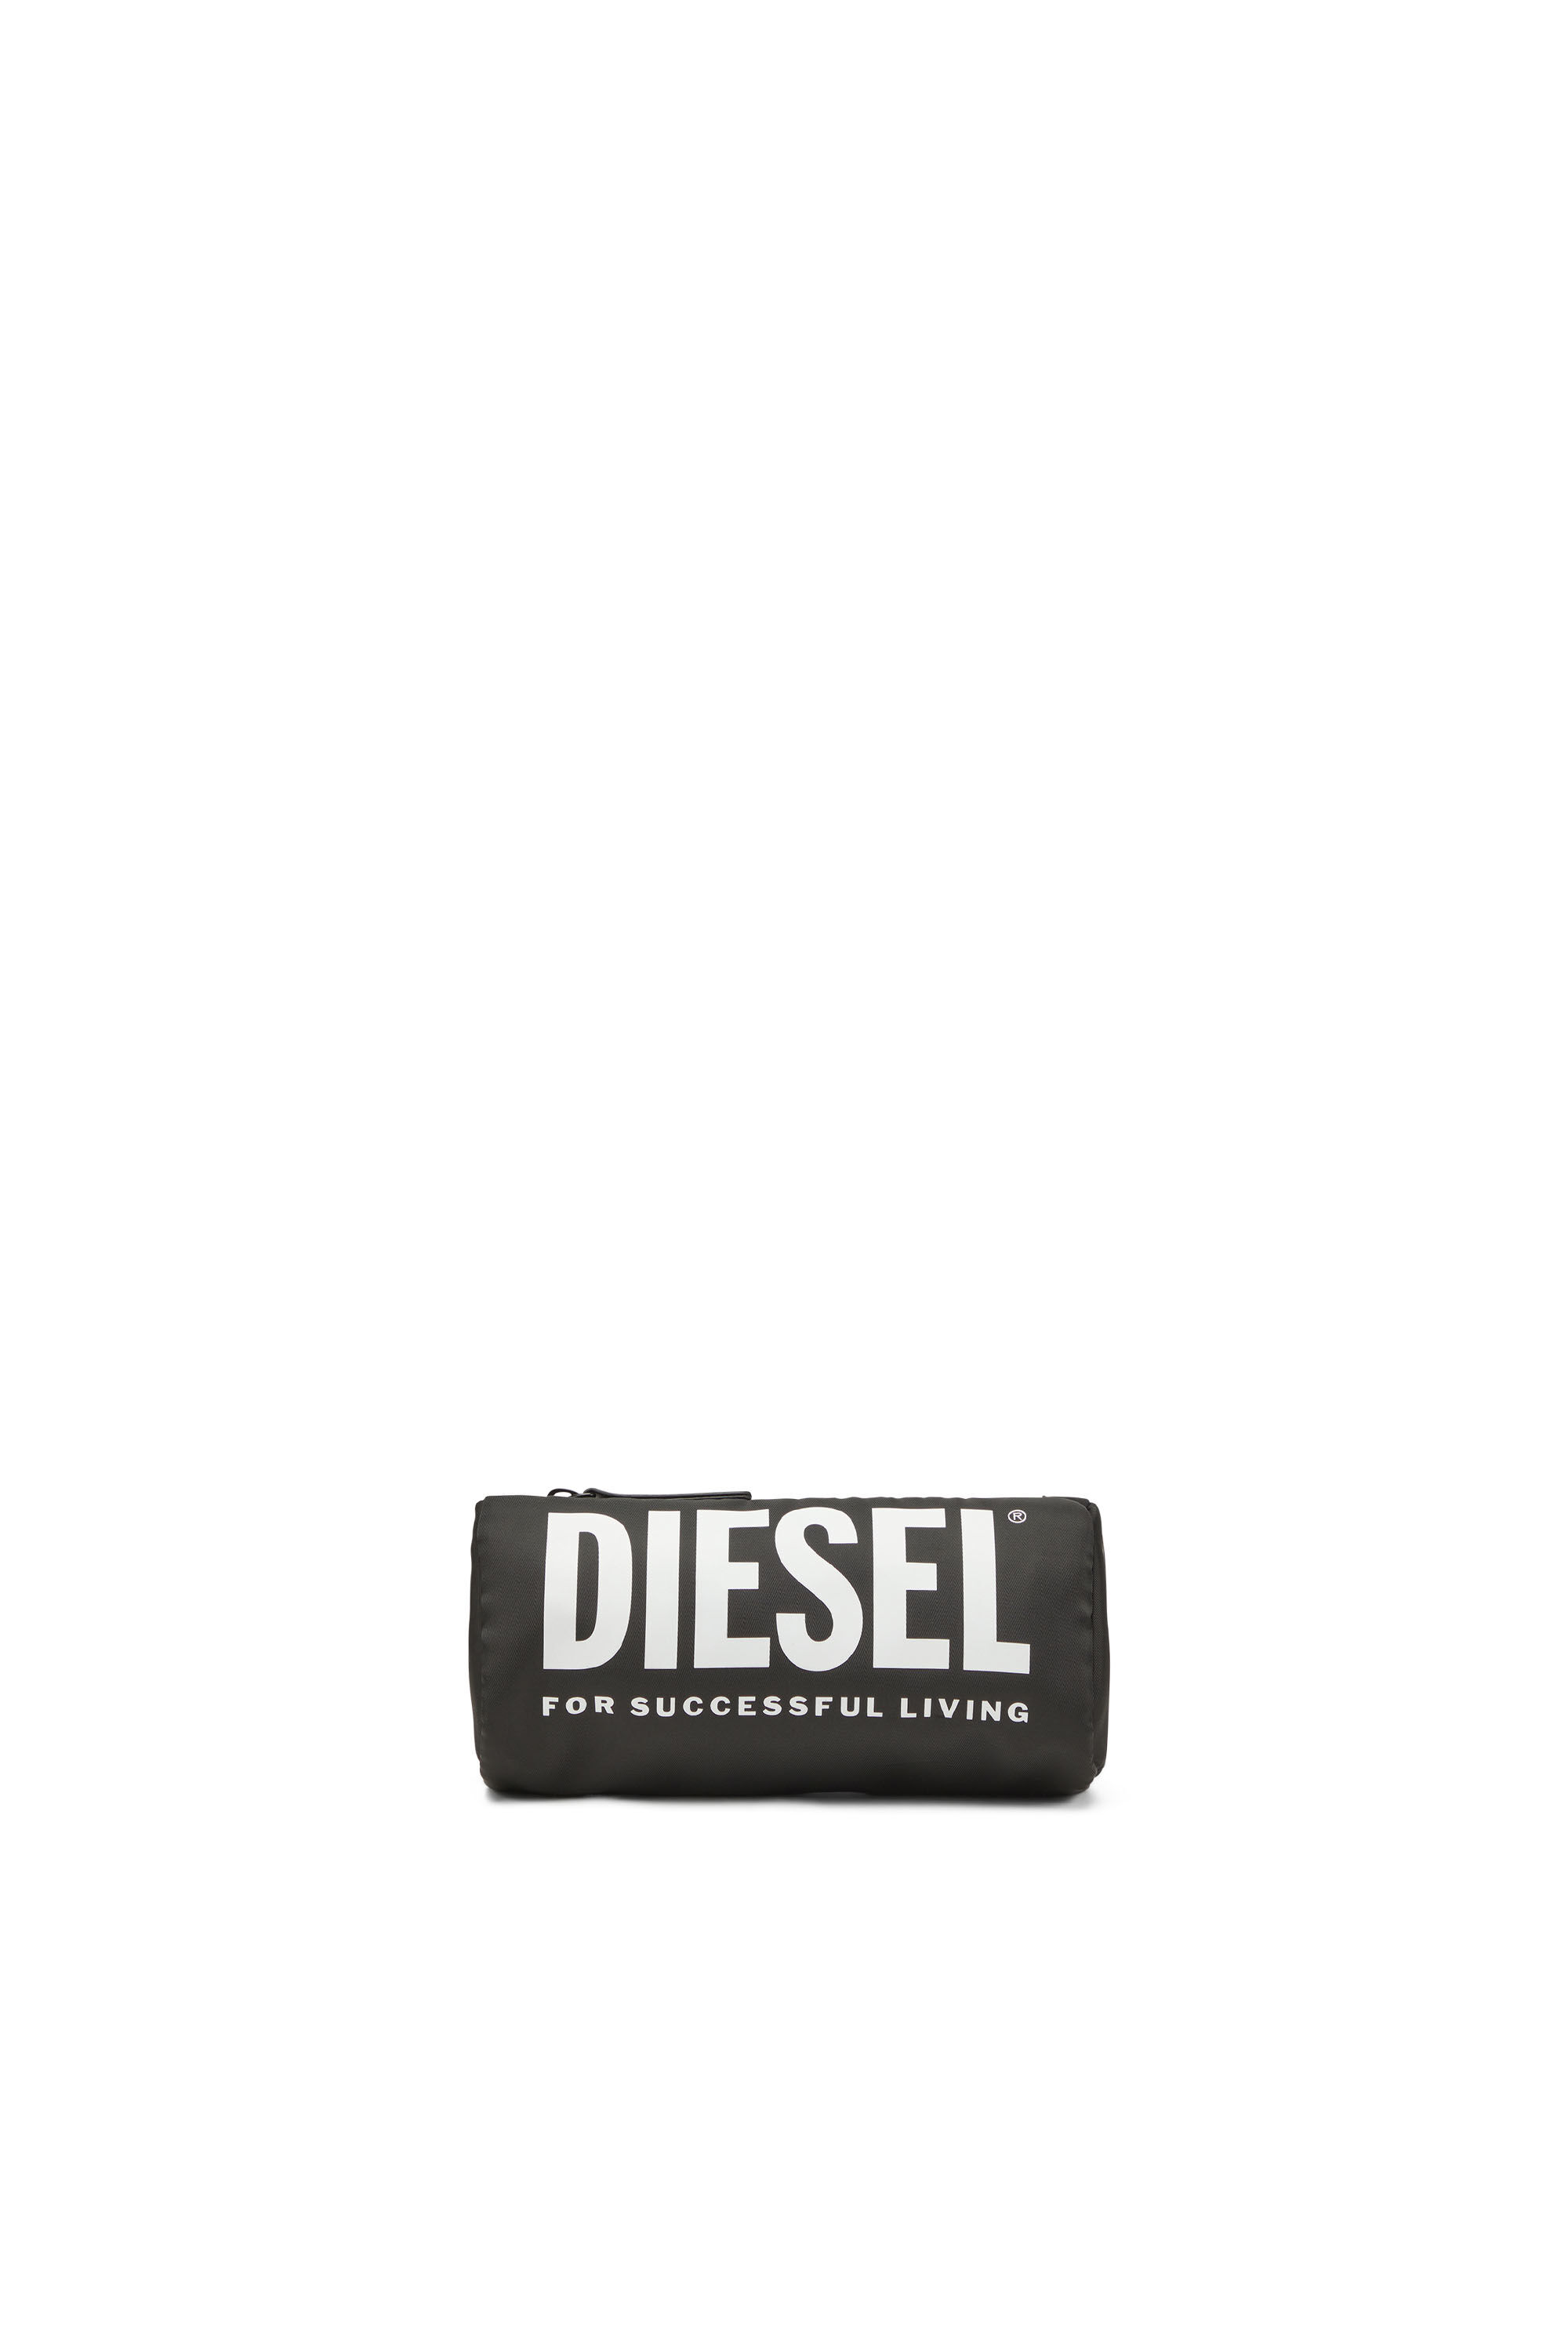 Diesel - WCASELOGO, Black - Image 1